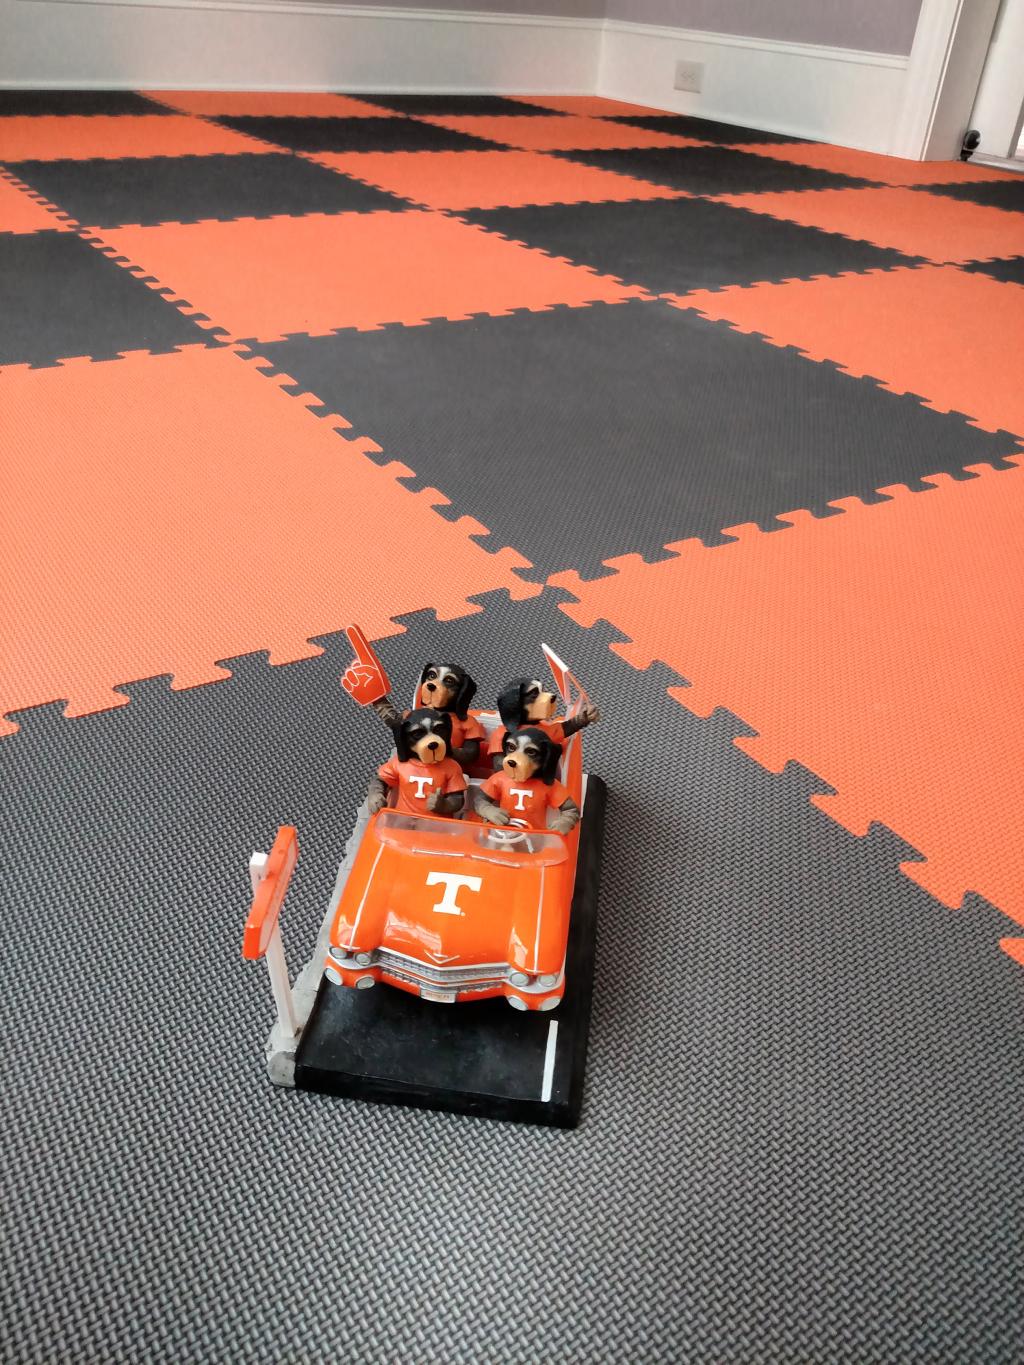 orange and gray foam floor mats